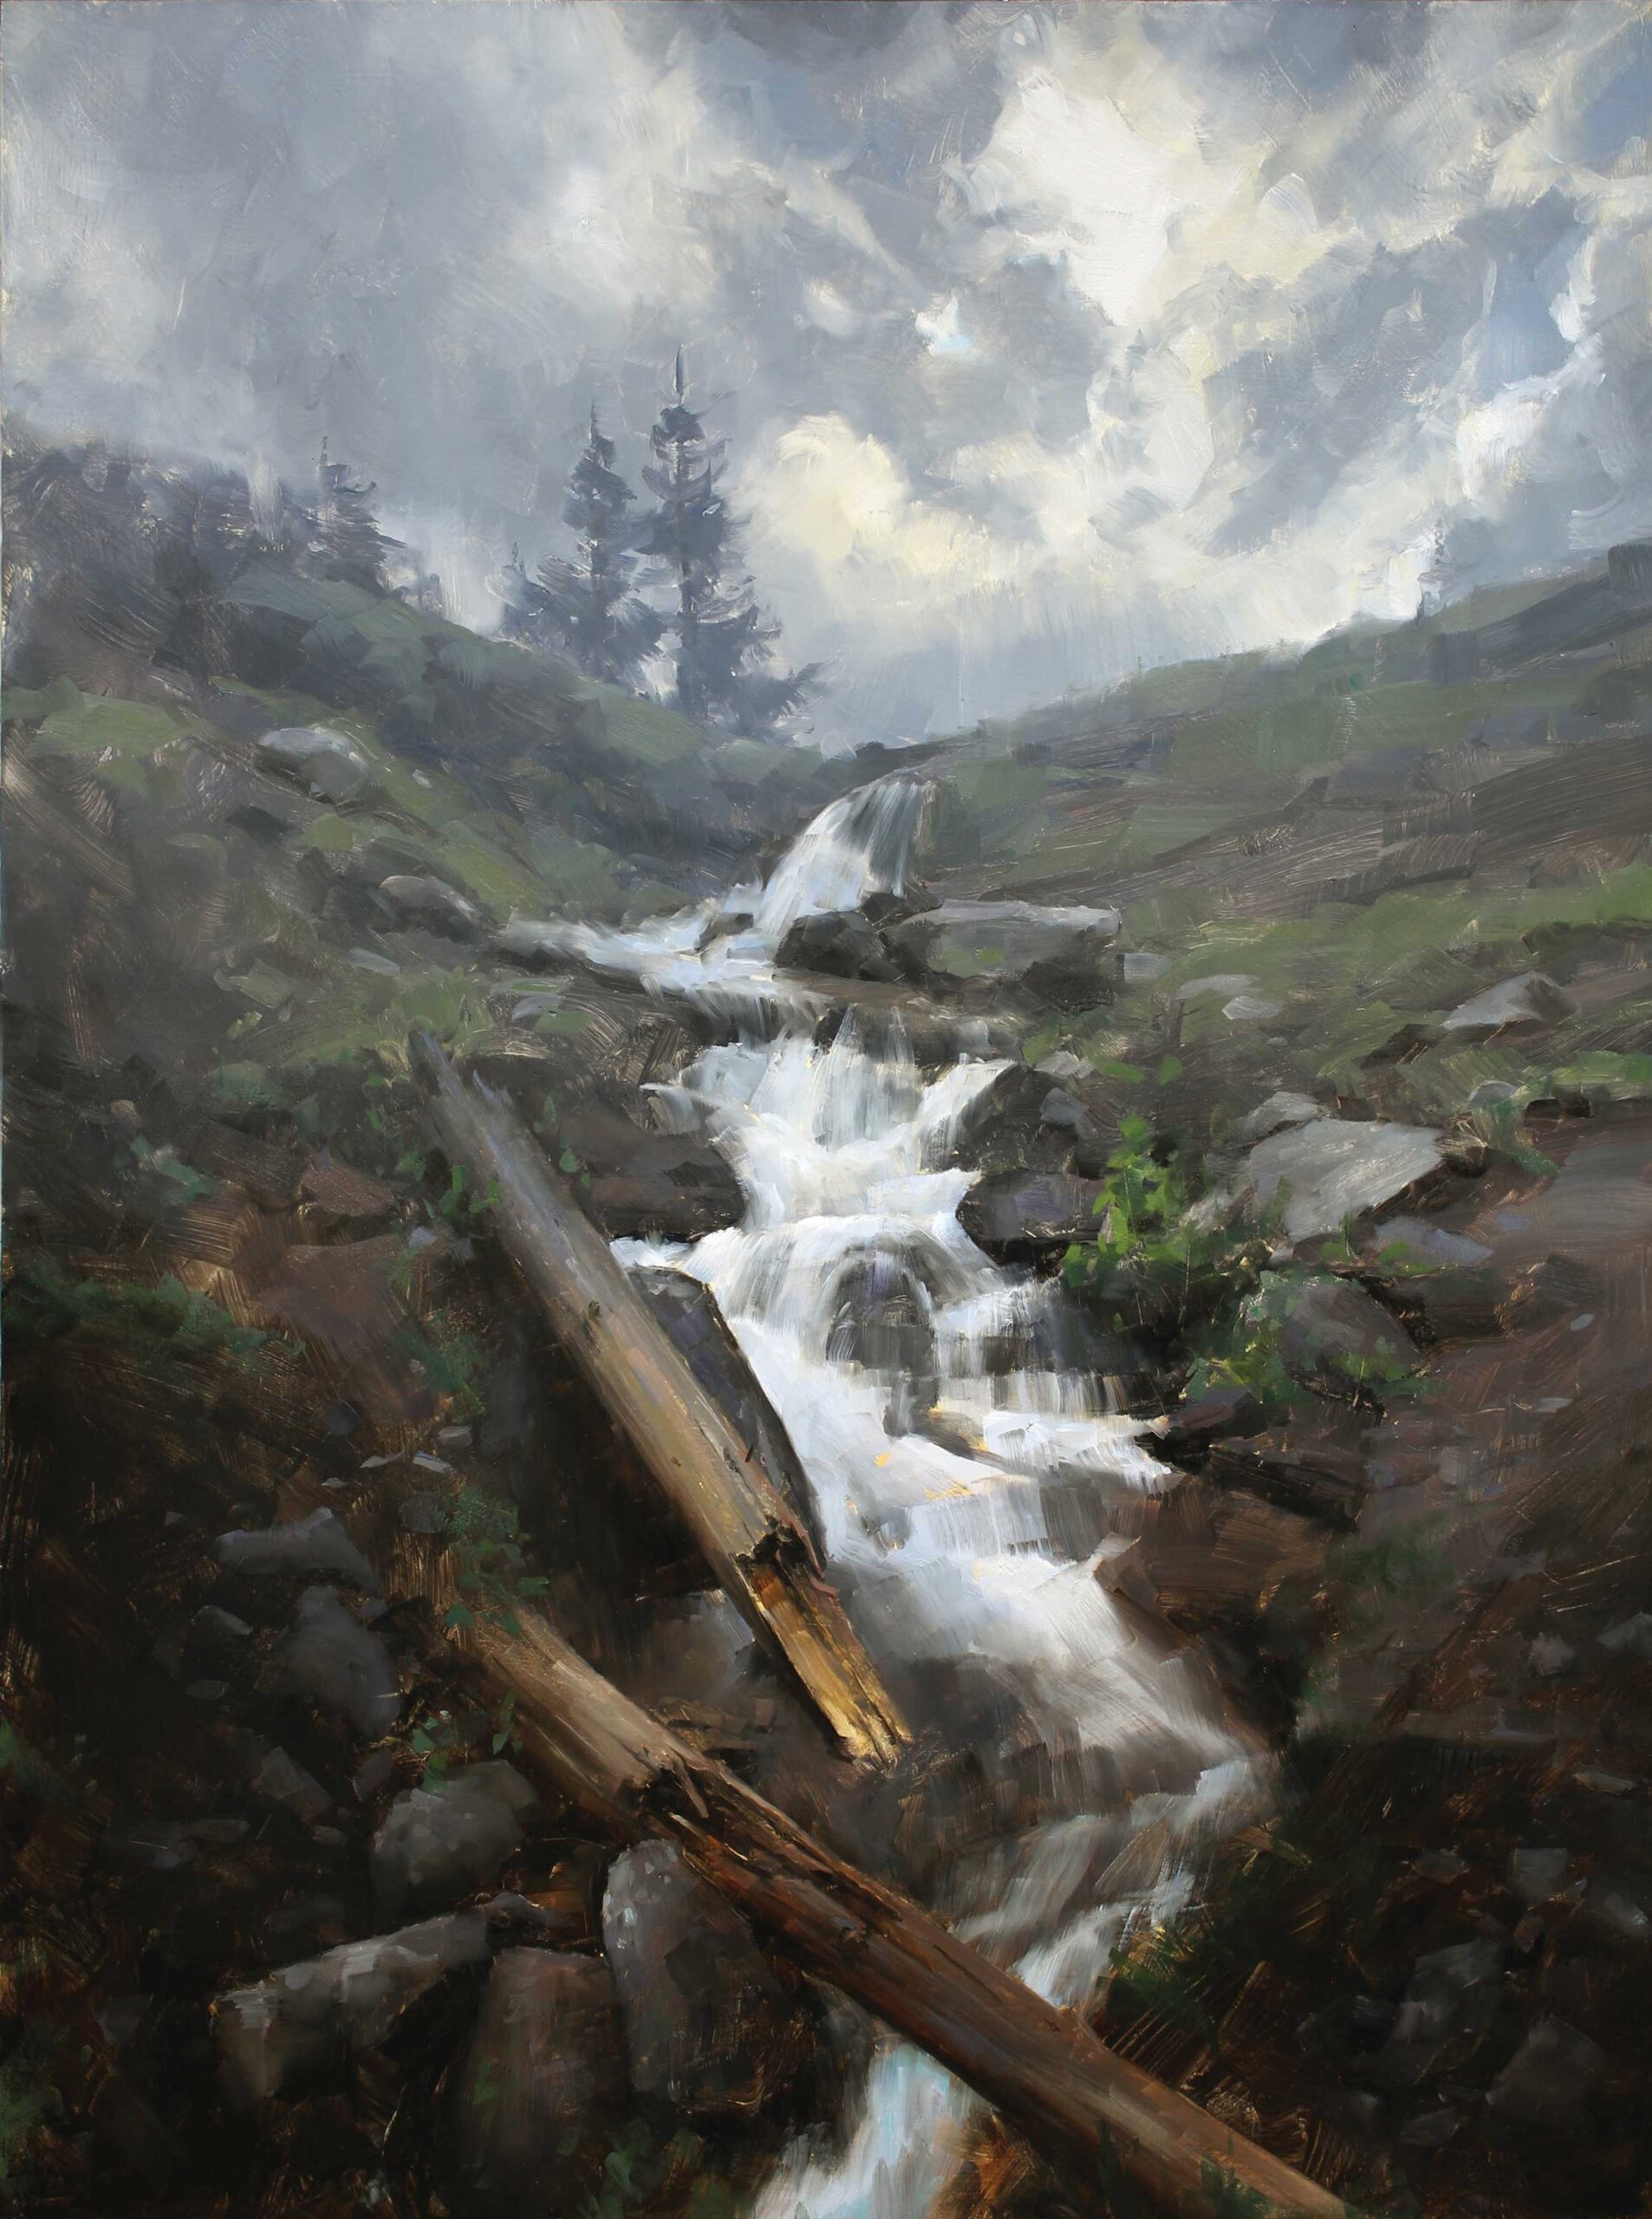 Dave Santillanes, "The Coming Rain," 2015, oil, 32 x 24 in., private collection, studio 